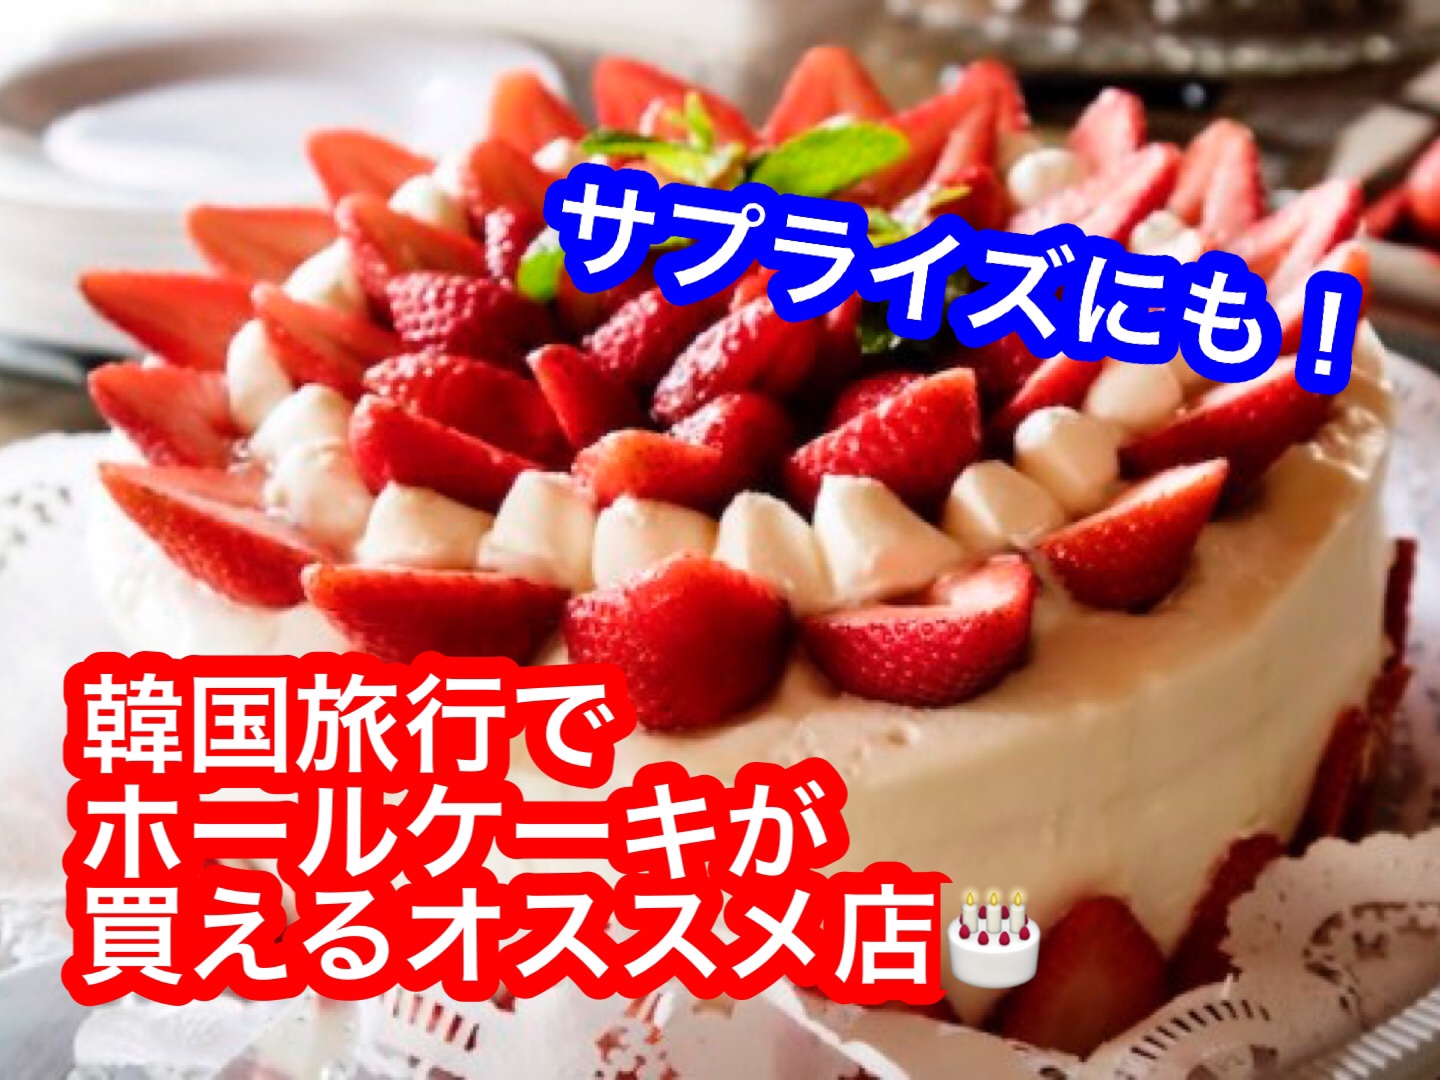 韓国旅行でホールケーキが買えるところ Dpontravel公式ブログ